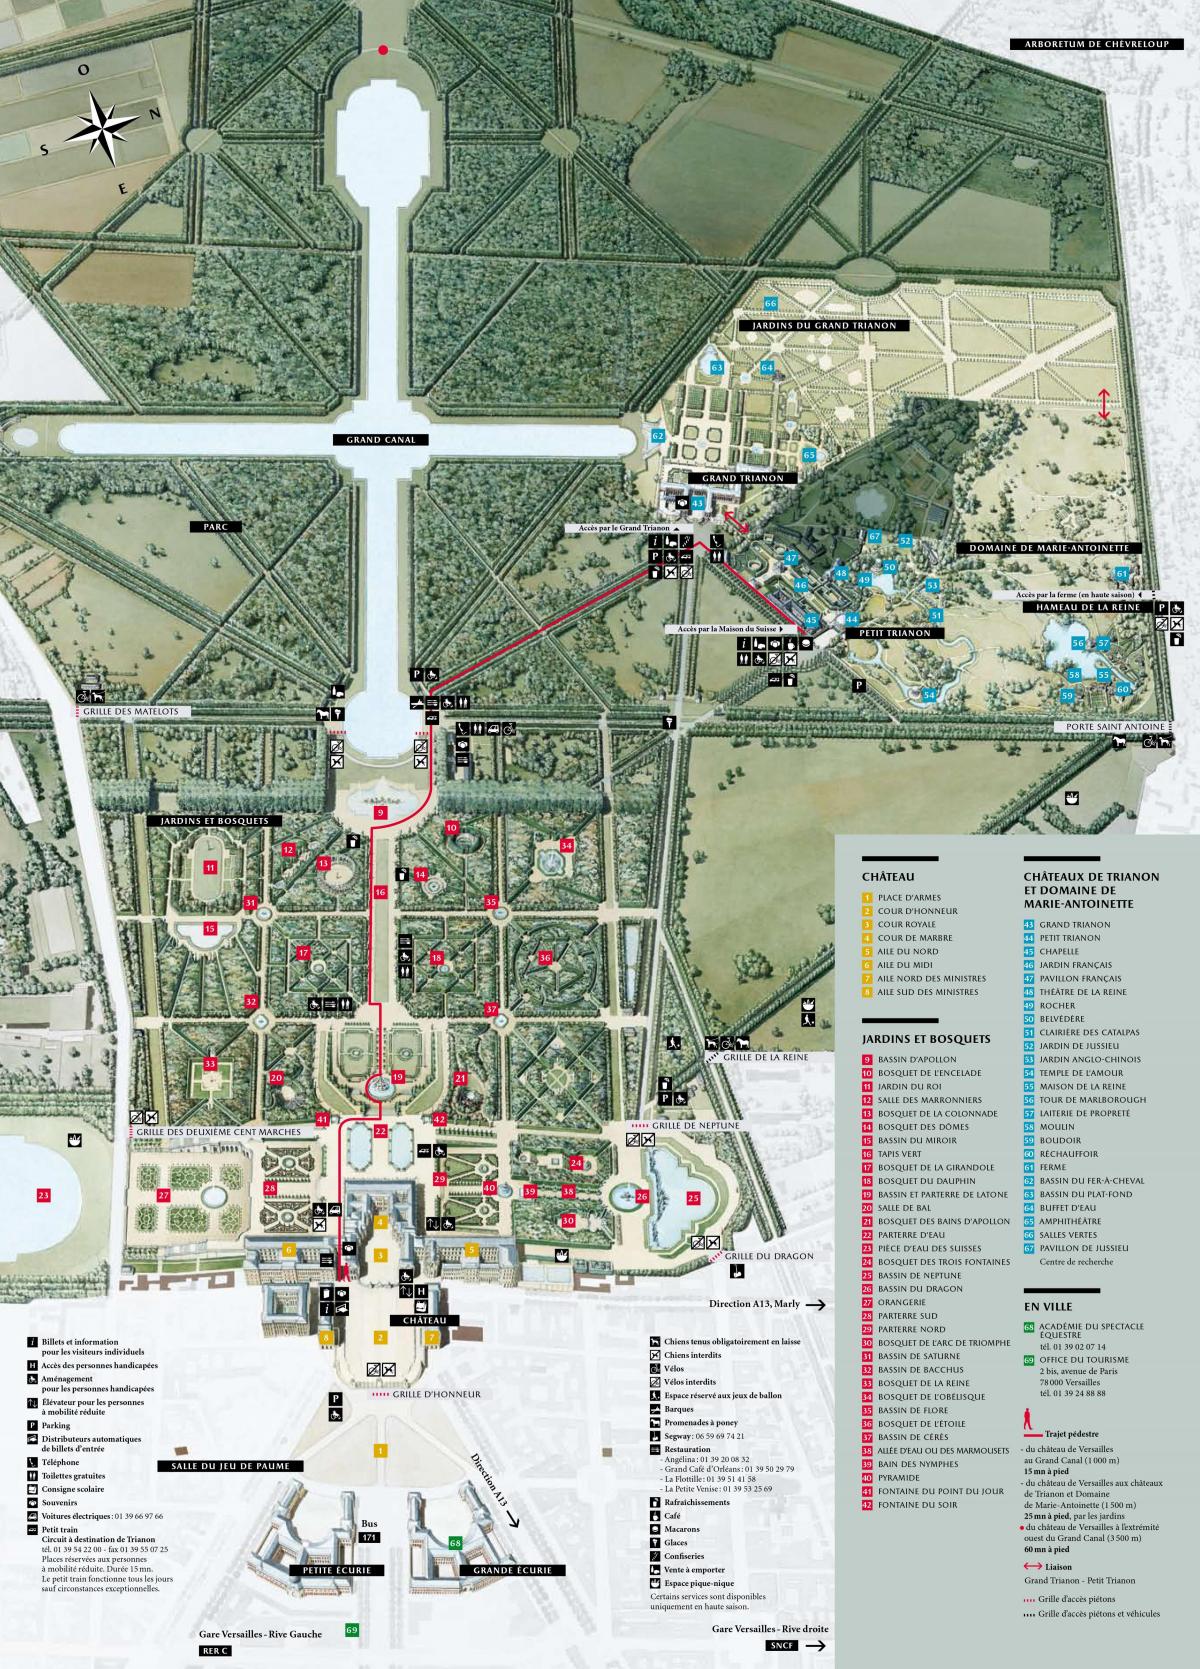 Mapa do Palácio de Versalhes